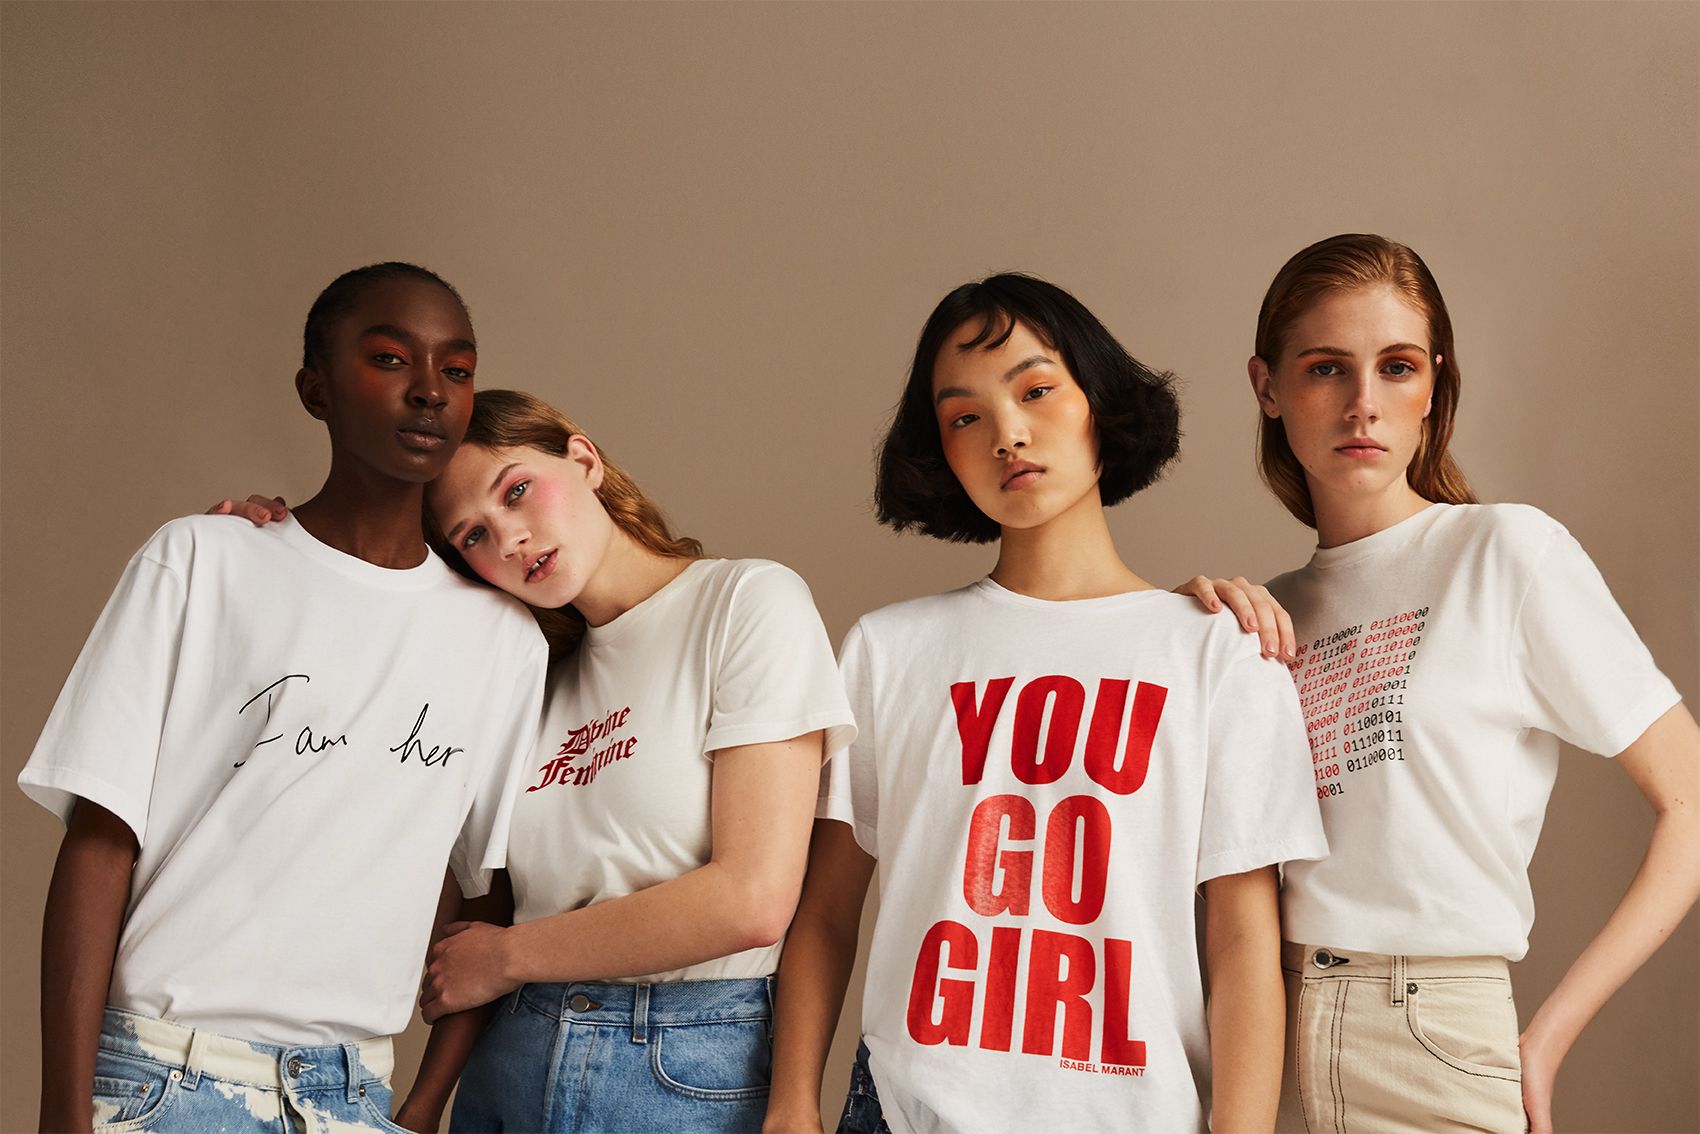 Công ty thời trang nổi tiếng Net-a-Porter đã mời 6 nhà thiết kế thời trang nữ - bao gồm Victoria Beckham, Alexa Chung và Isabel Marant,... để thiết kế áo phông với các thông điệp truyền sức mạnh cho phụ nữ.